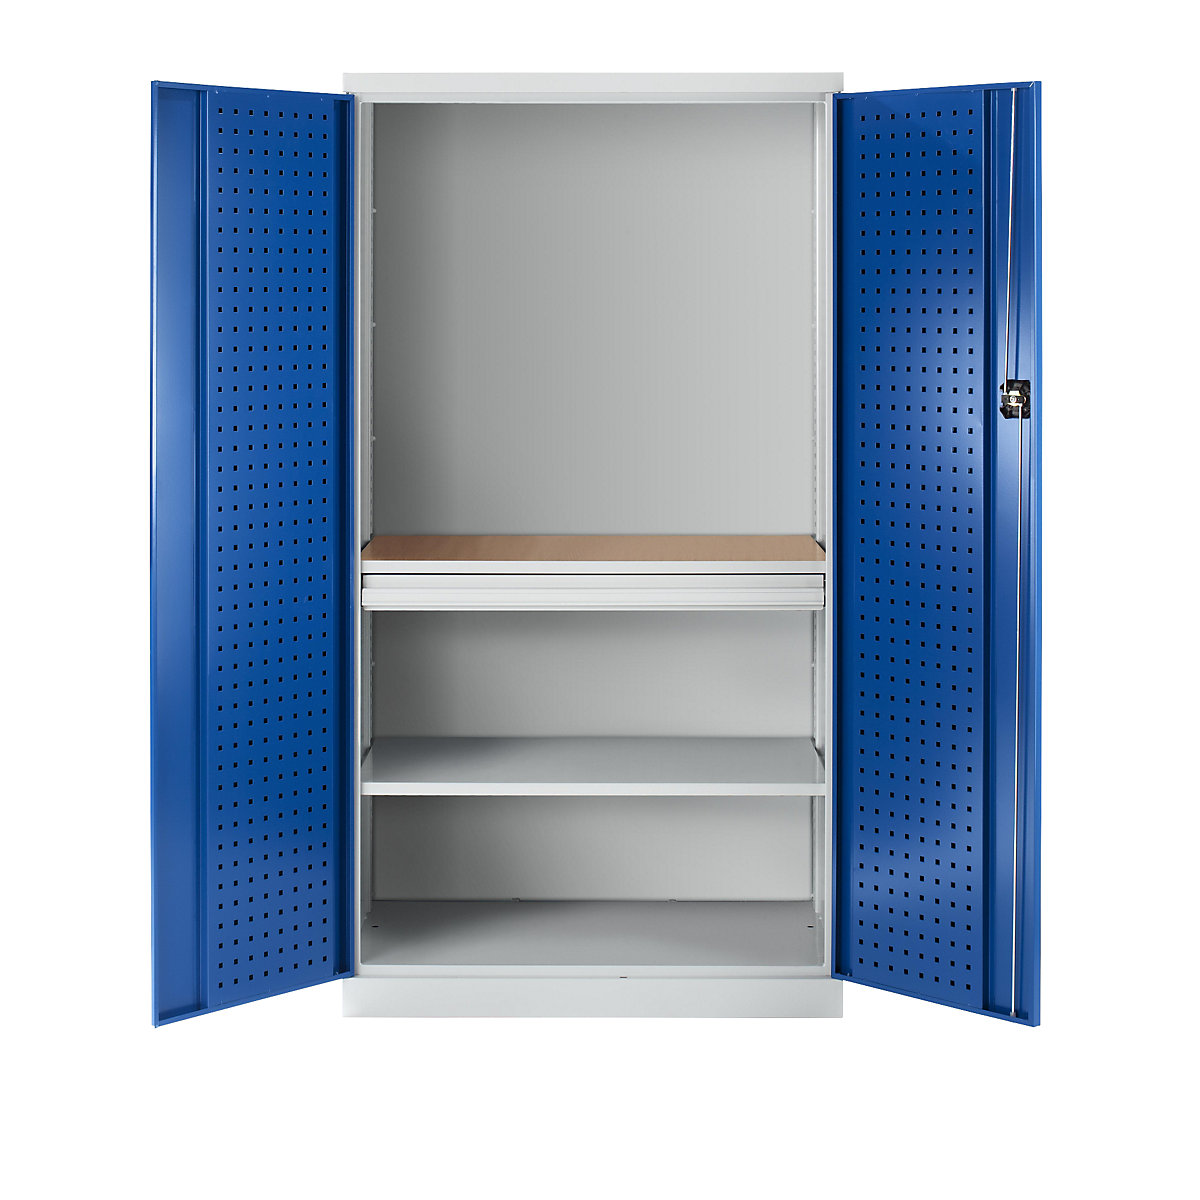 Nástrojová skříň s vyraženými otvory, 1 zásuvka, 1 police, 1 pracovní deska – plná zadní stěna, dveře hořcově modré-4